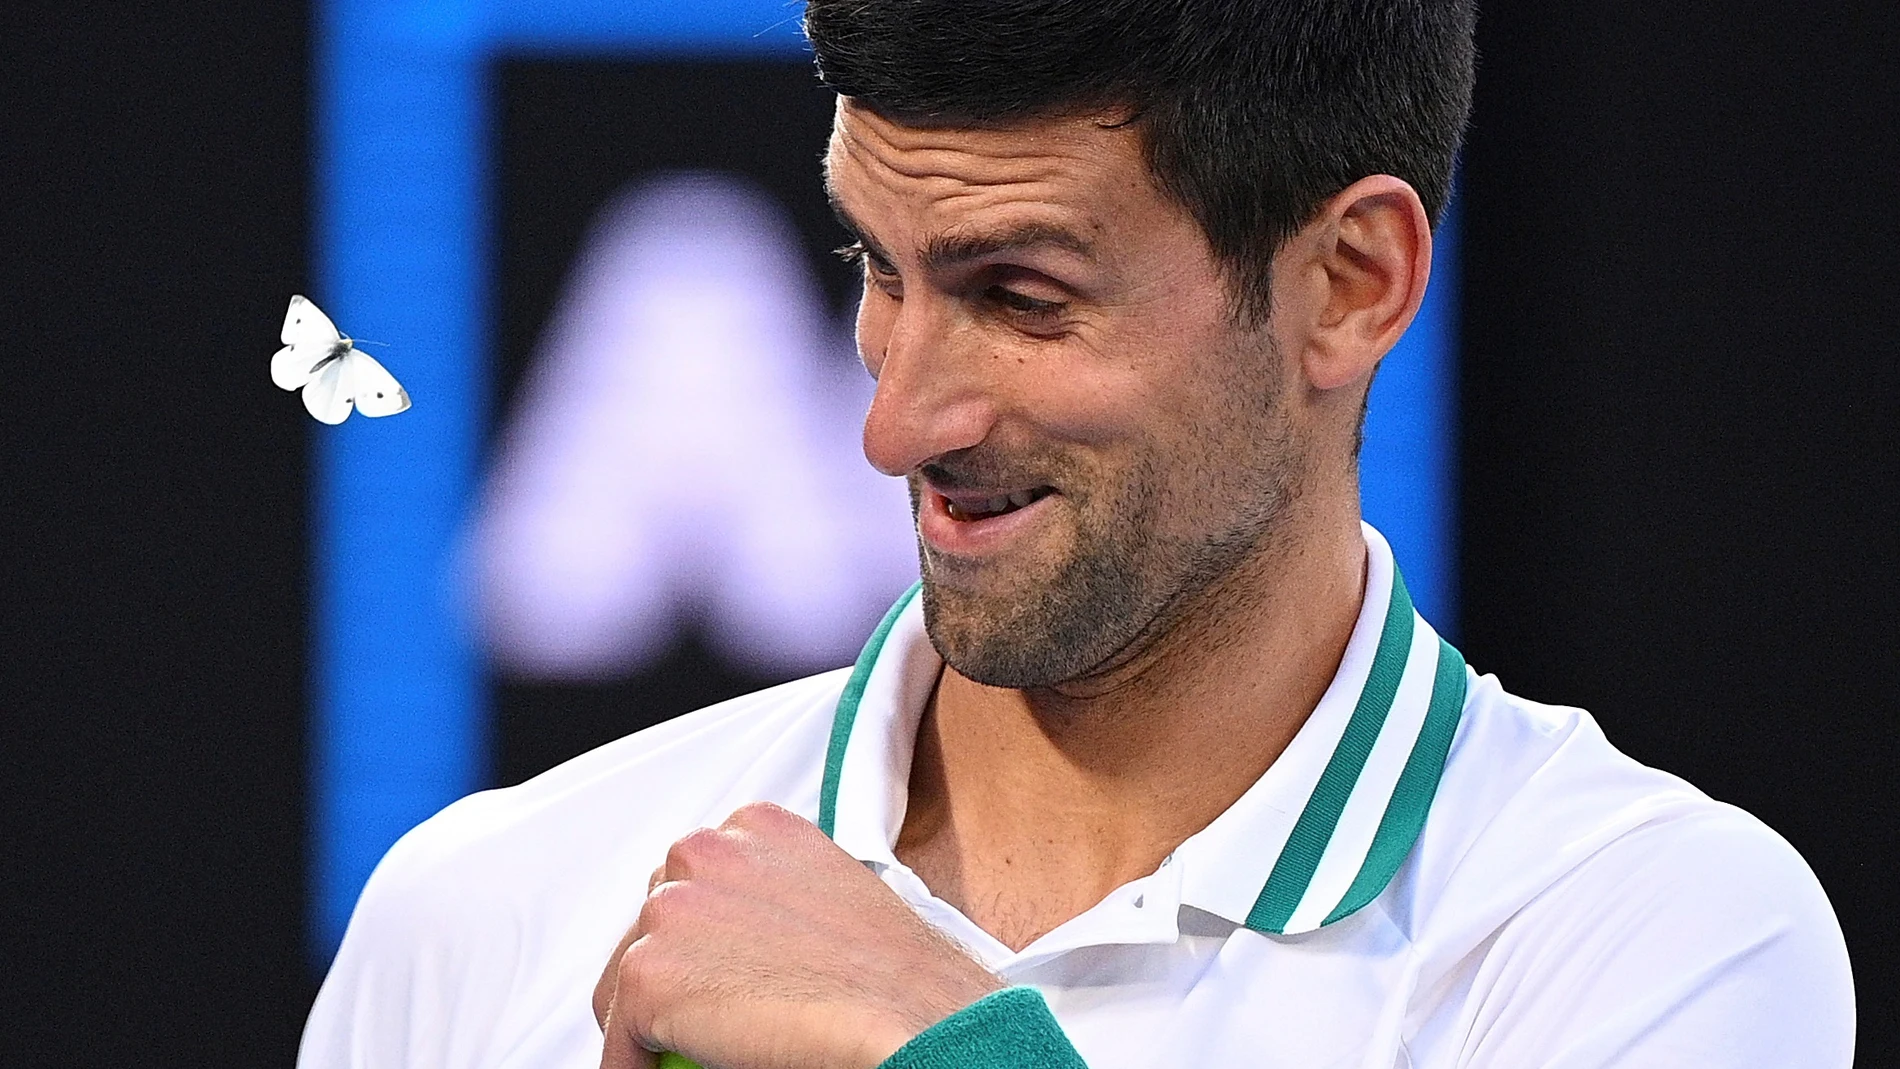 La participación de Djokovic en el Open de Australia está más en el aire que nunca